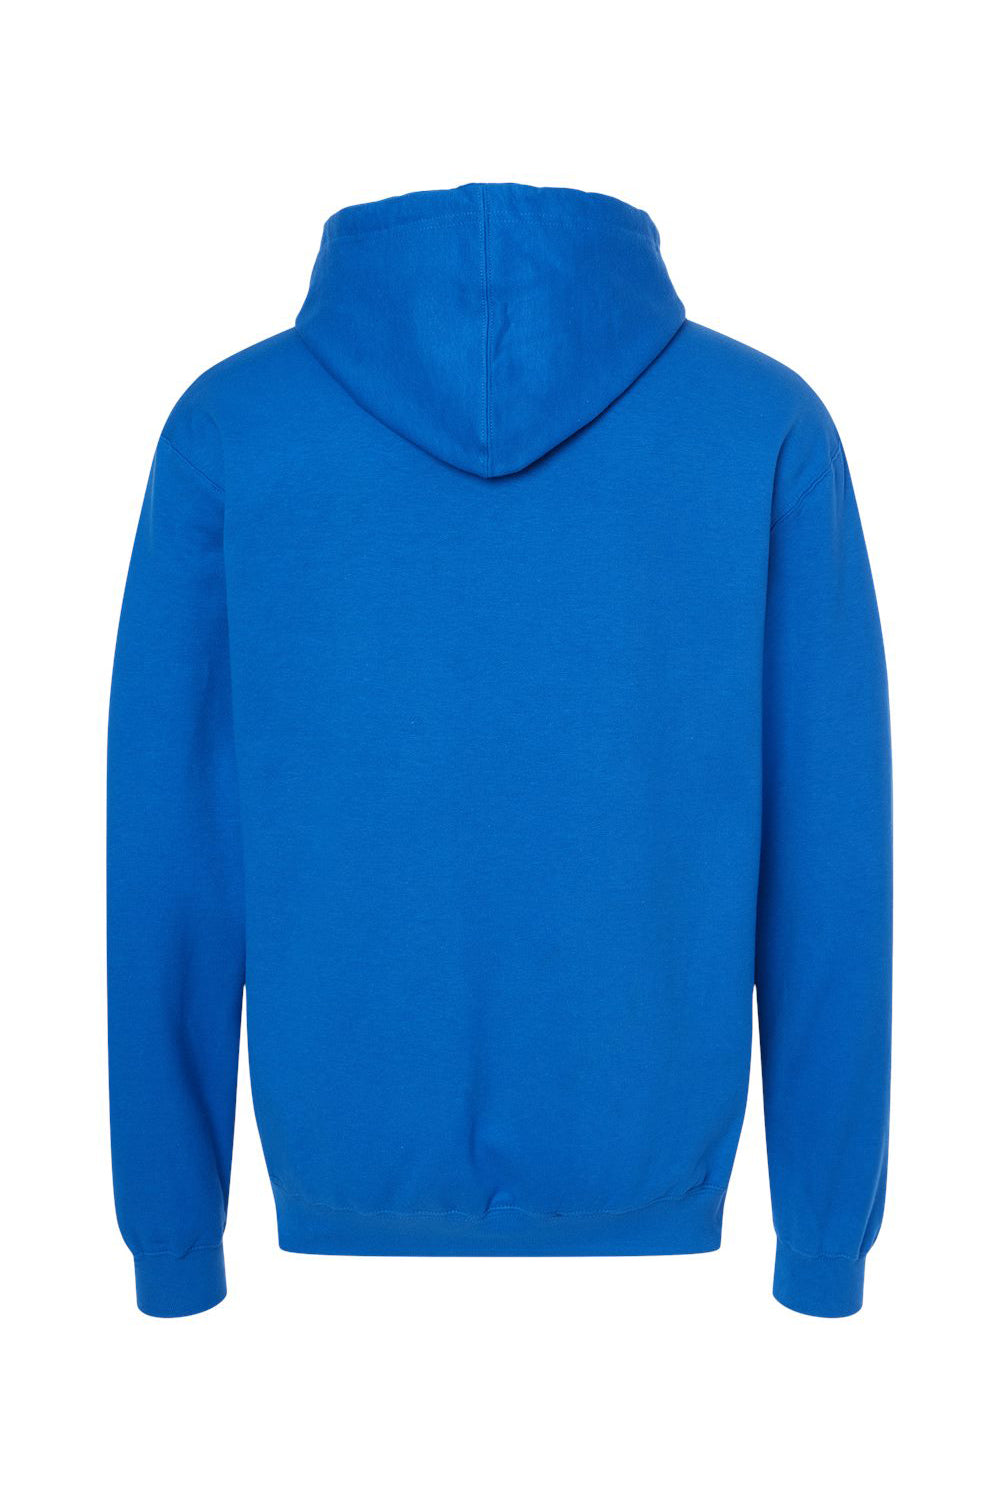 Tultex 320 Mens Fleece Hooded Sweatshirt Hoodie Royal Blue Flat Back